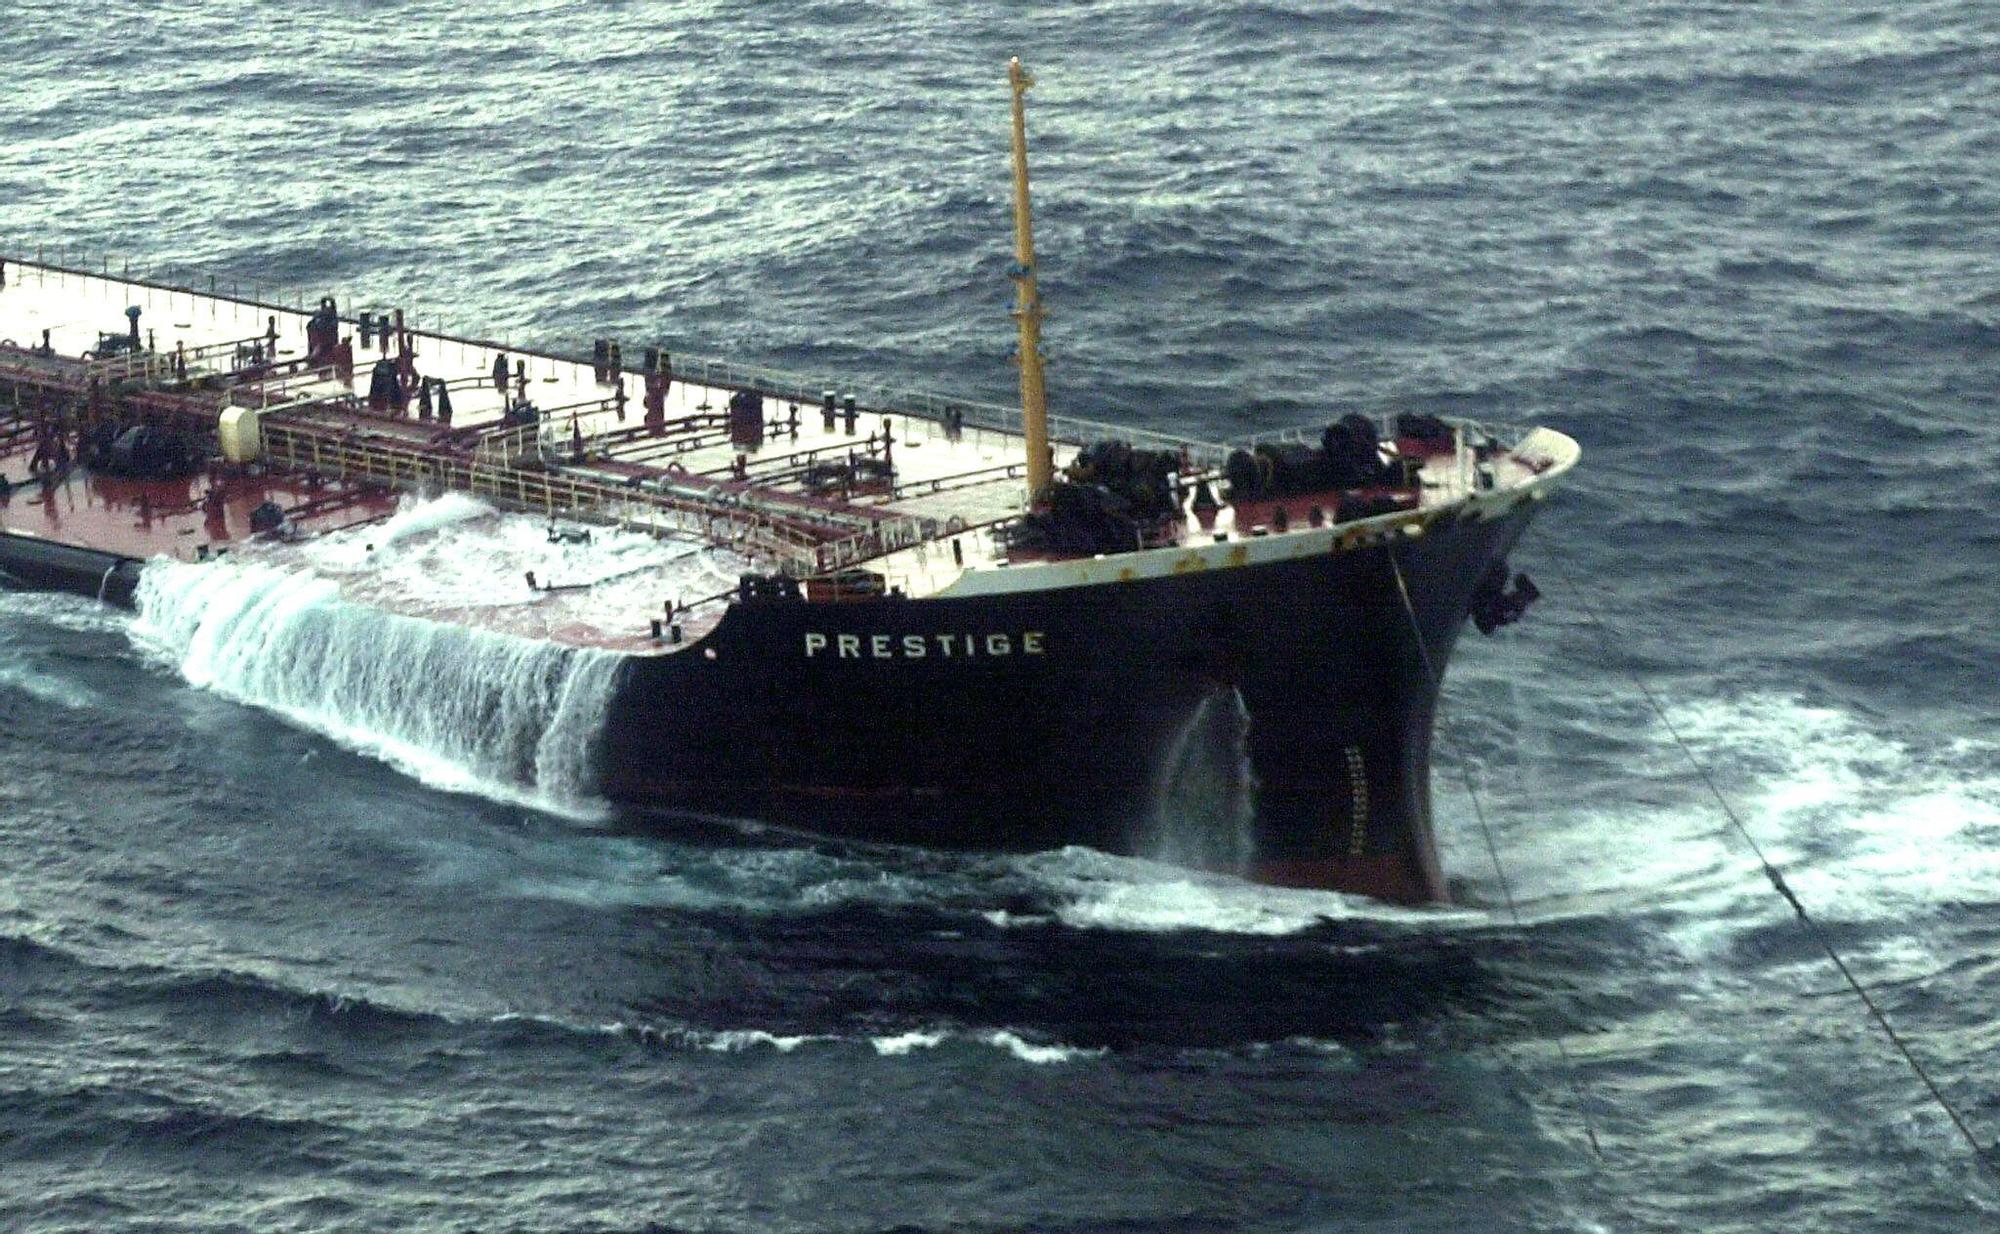 El petrolero Prestige cuando estaba siendo remolcado a escasas millas de la costa gallega antes de hunidrse en 2002 Lavandeira Jr  vertiendo 63000 toneladas de fuel 3.000 km costa afectados más de 200.000 aves marin.jpg